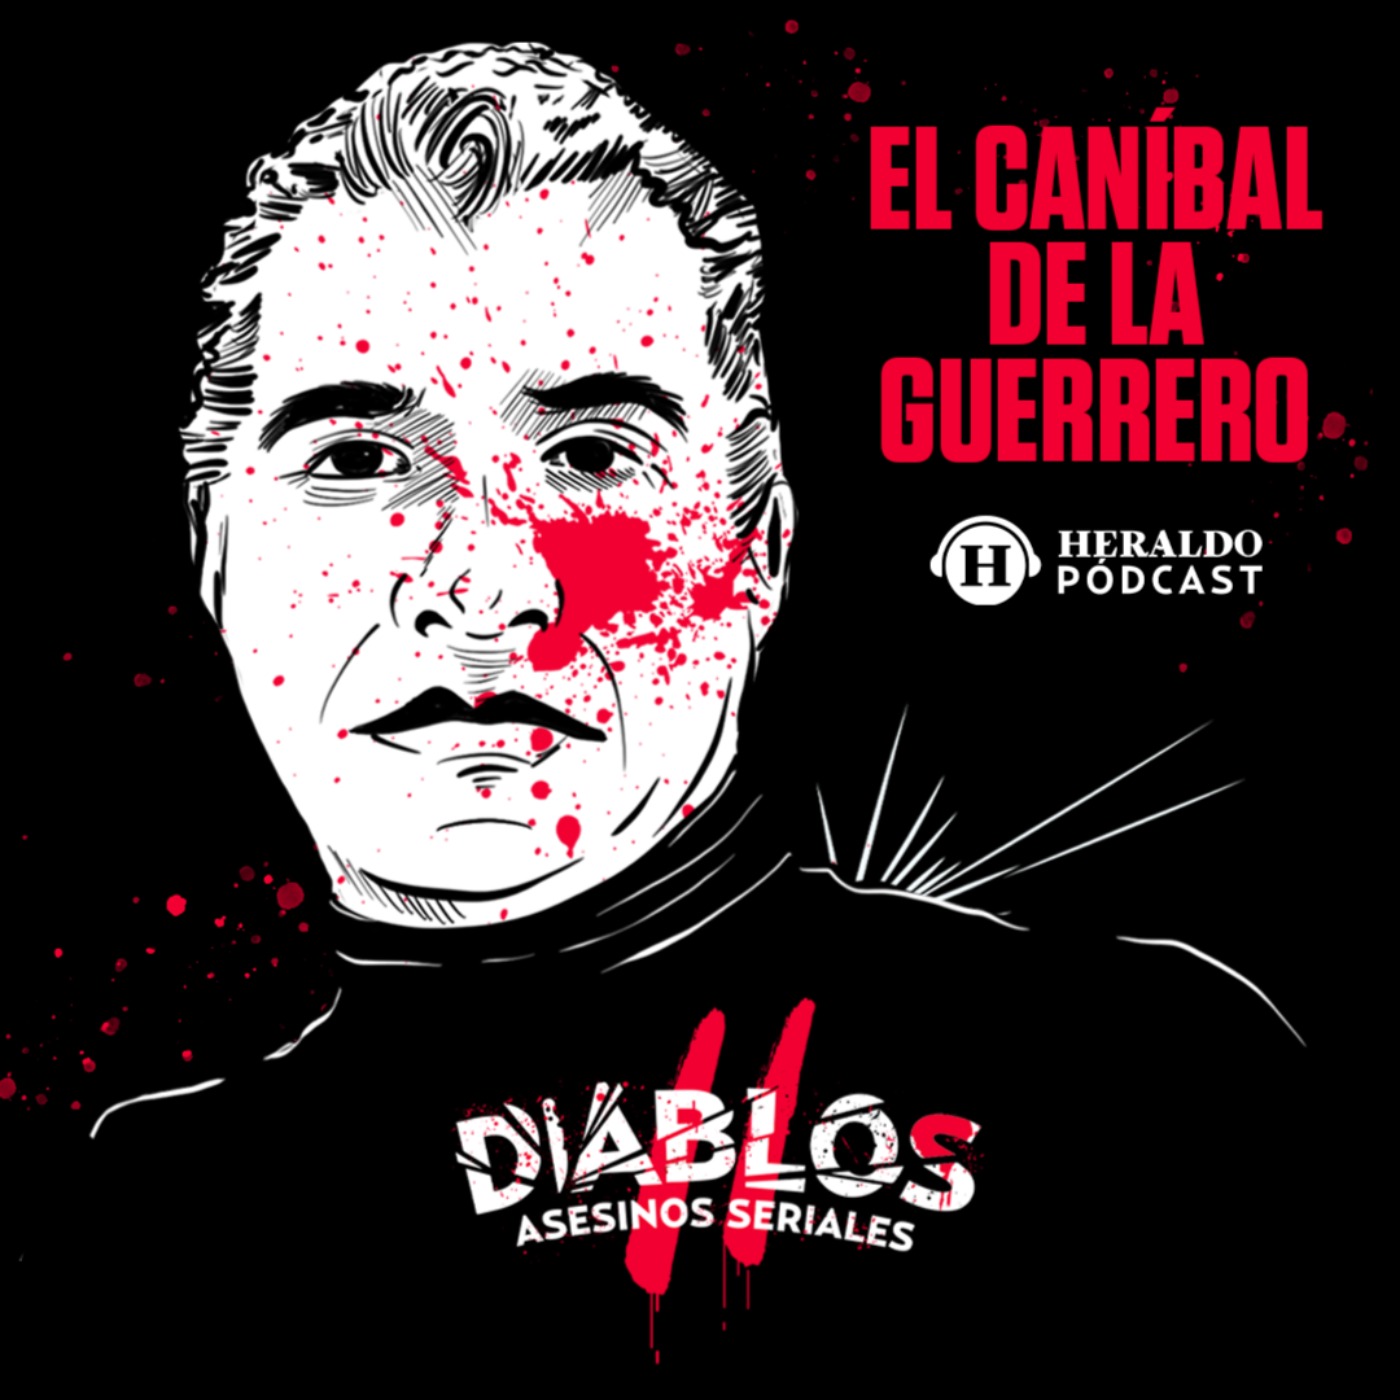 El Caníbal de la Guerrero: José Luis Calva | Diablos.